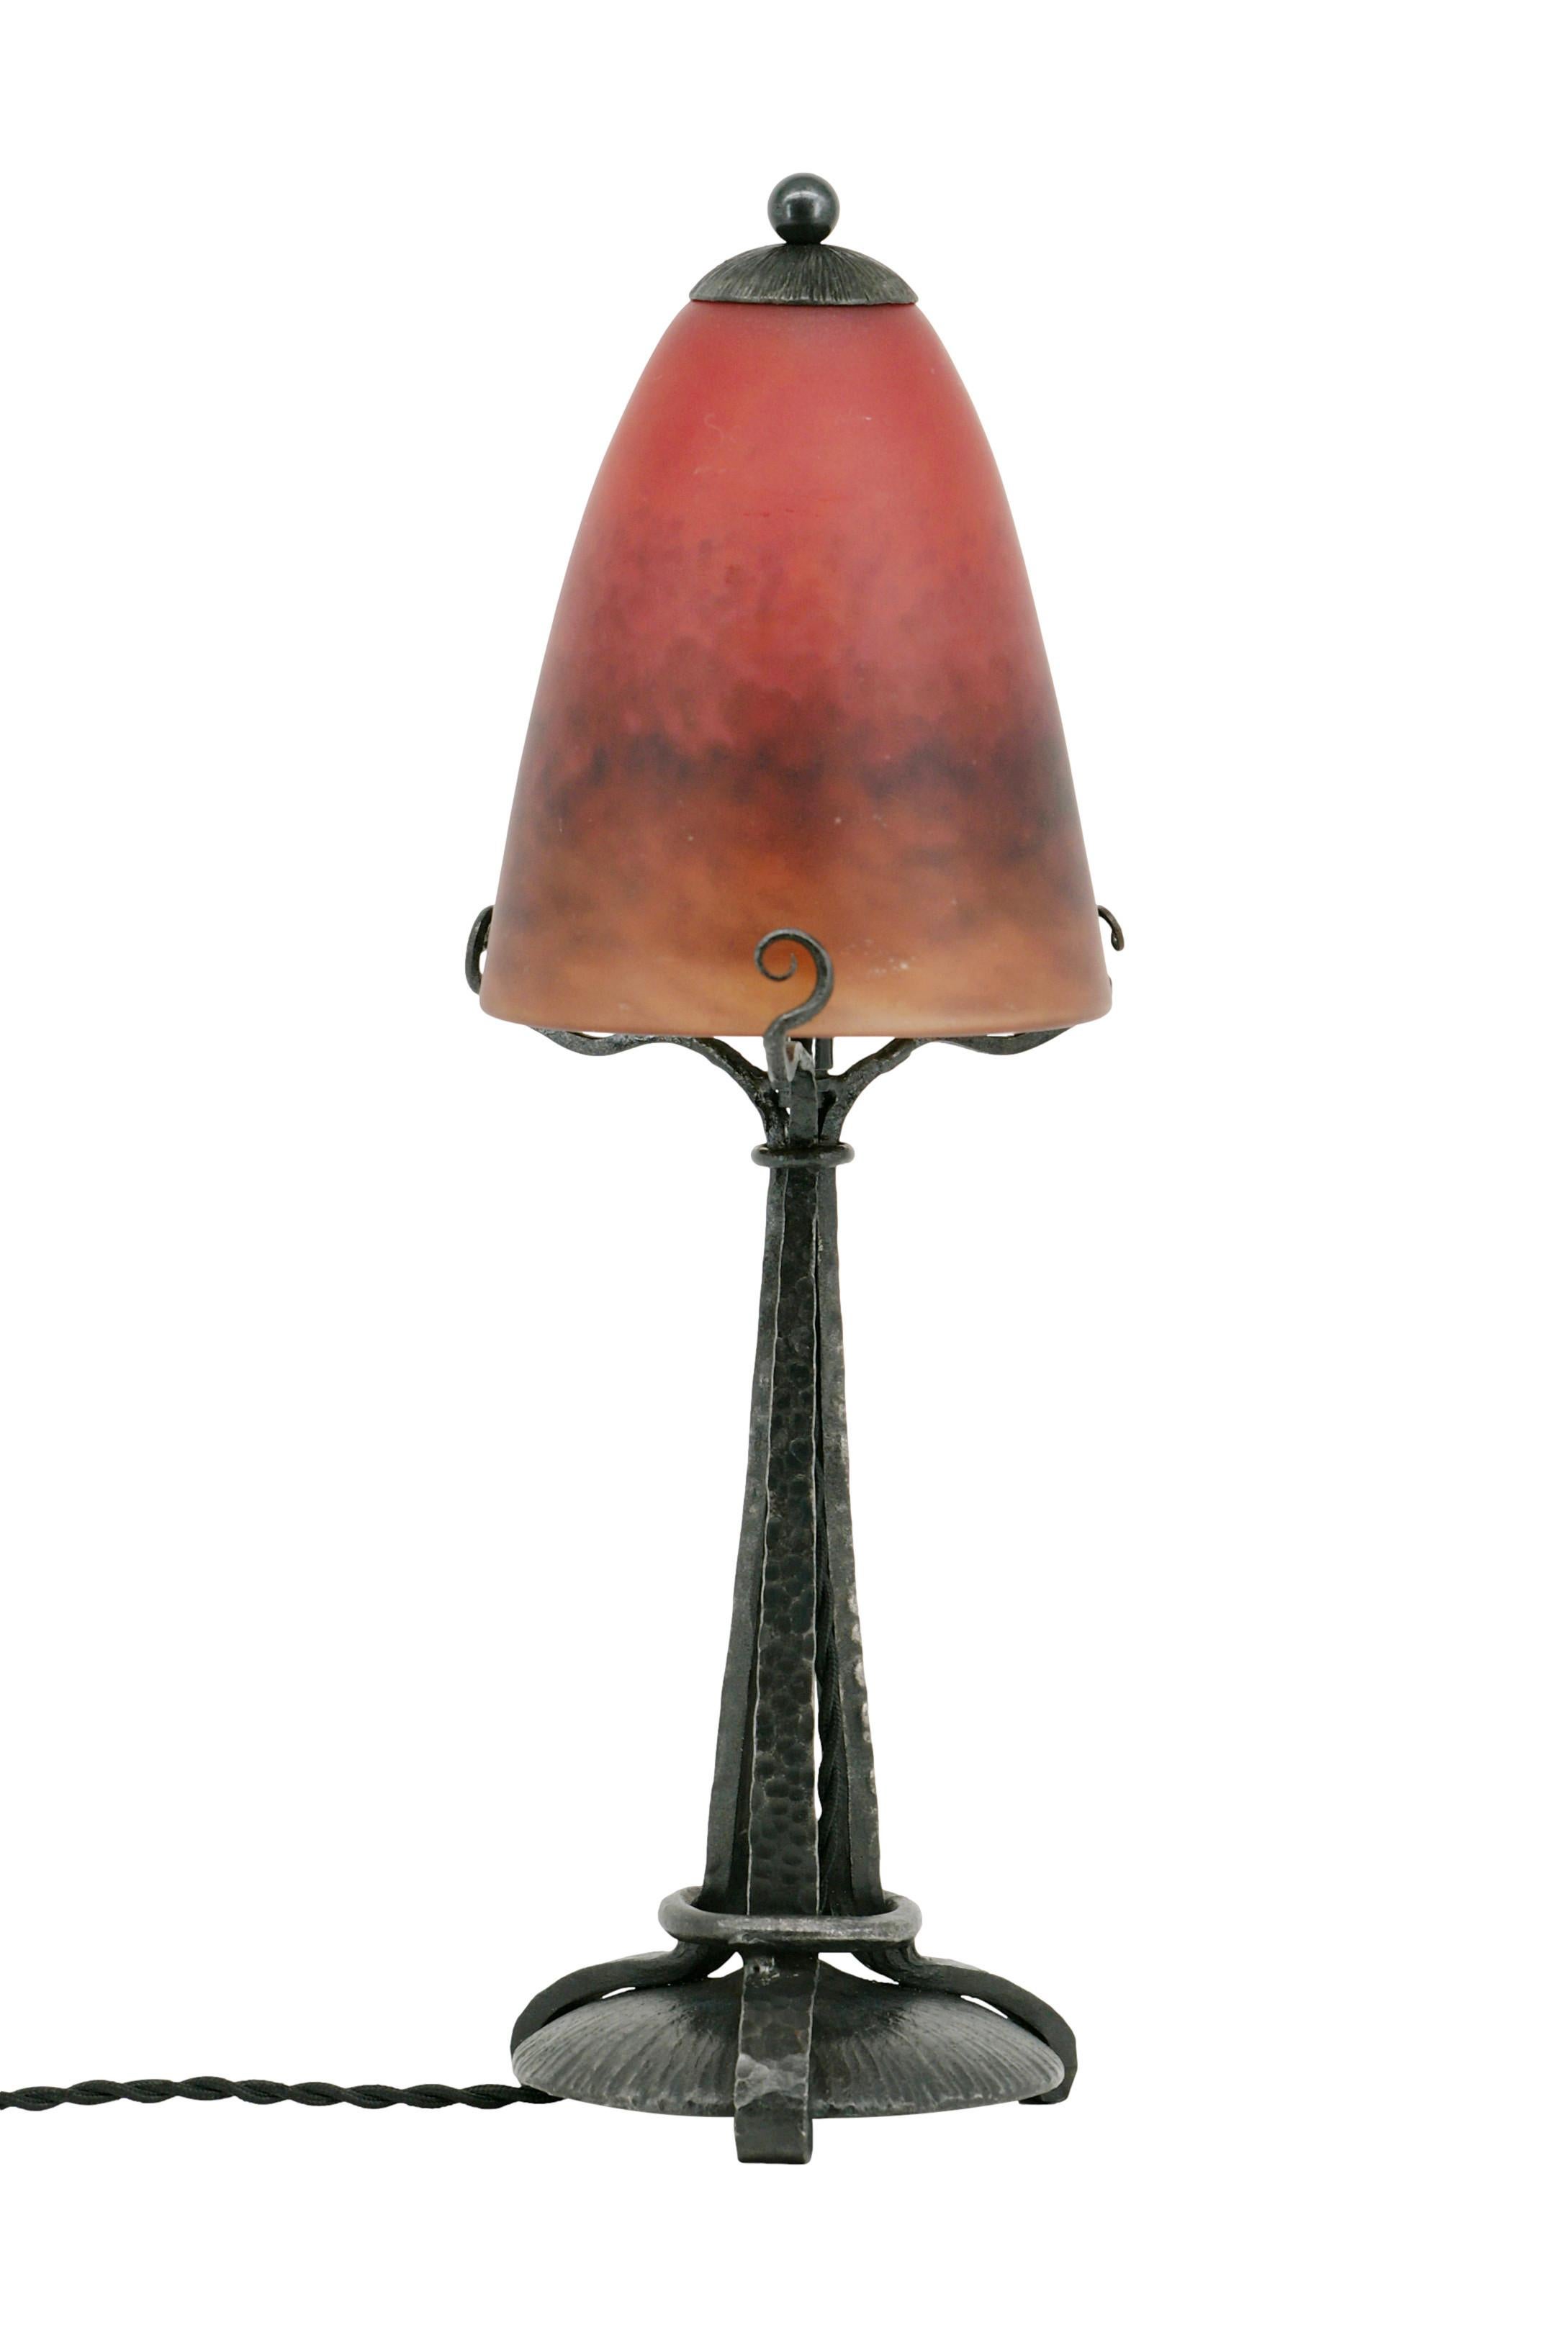 Lampe de table Art Déco française par Charles Schneider, Epinay-sur-Seine (Paris), 1924-1928. Abat-jour en verre tacheté, des poudres sont appliquées entre deux couches qui vient sur son élégante fixation en fer forgé. Hauteur : 39,5 cm, diamètre